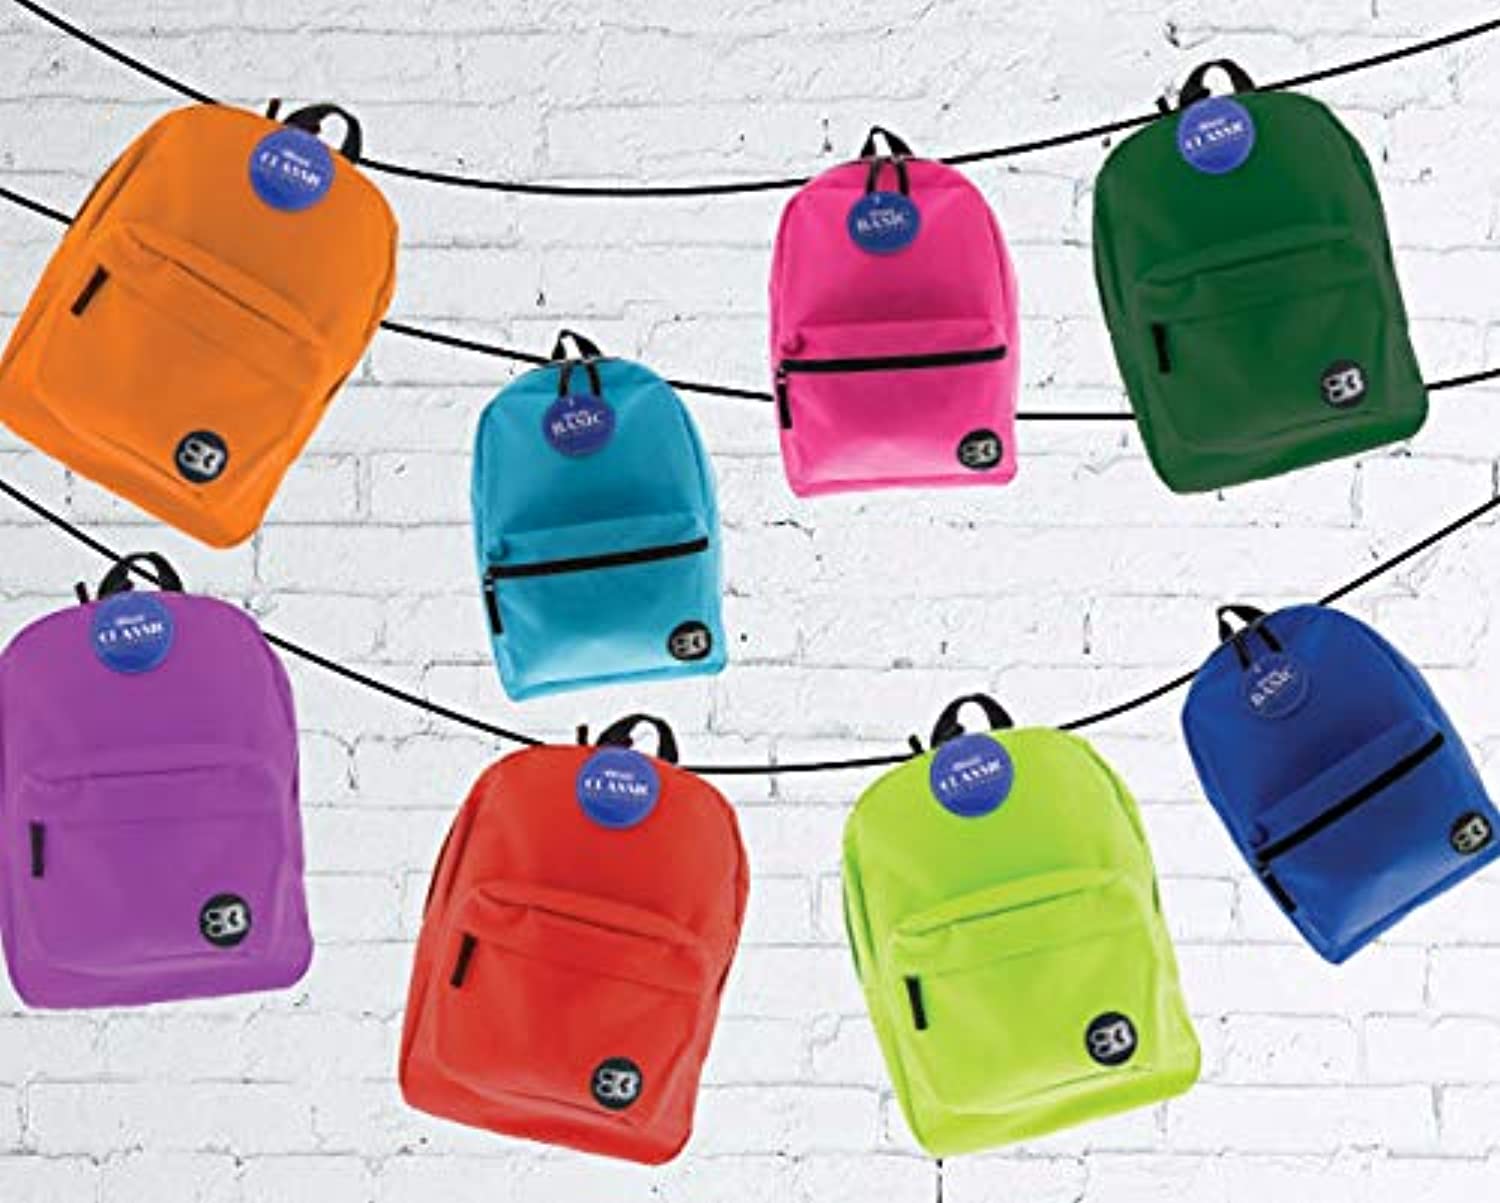 Simple School Backpack 16 Inch | Purple